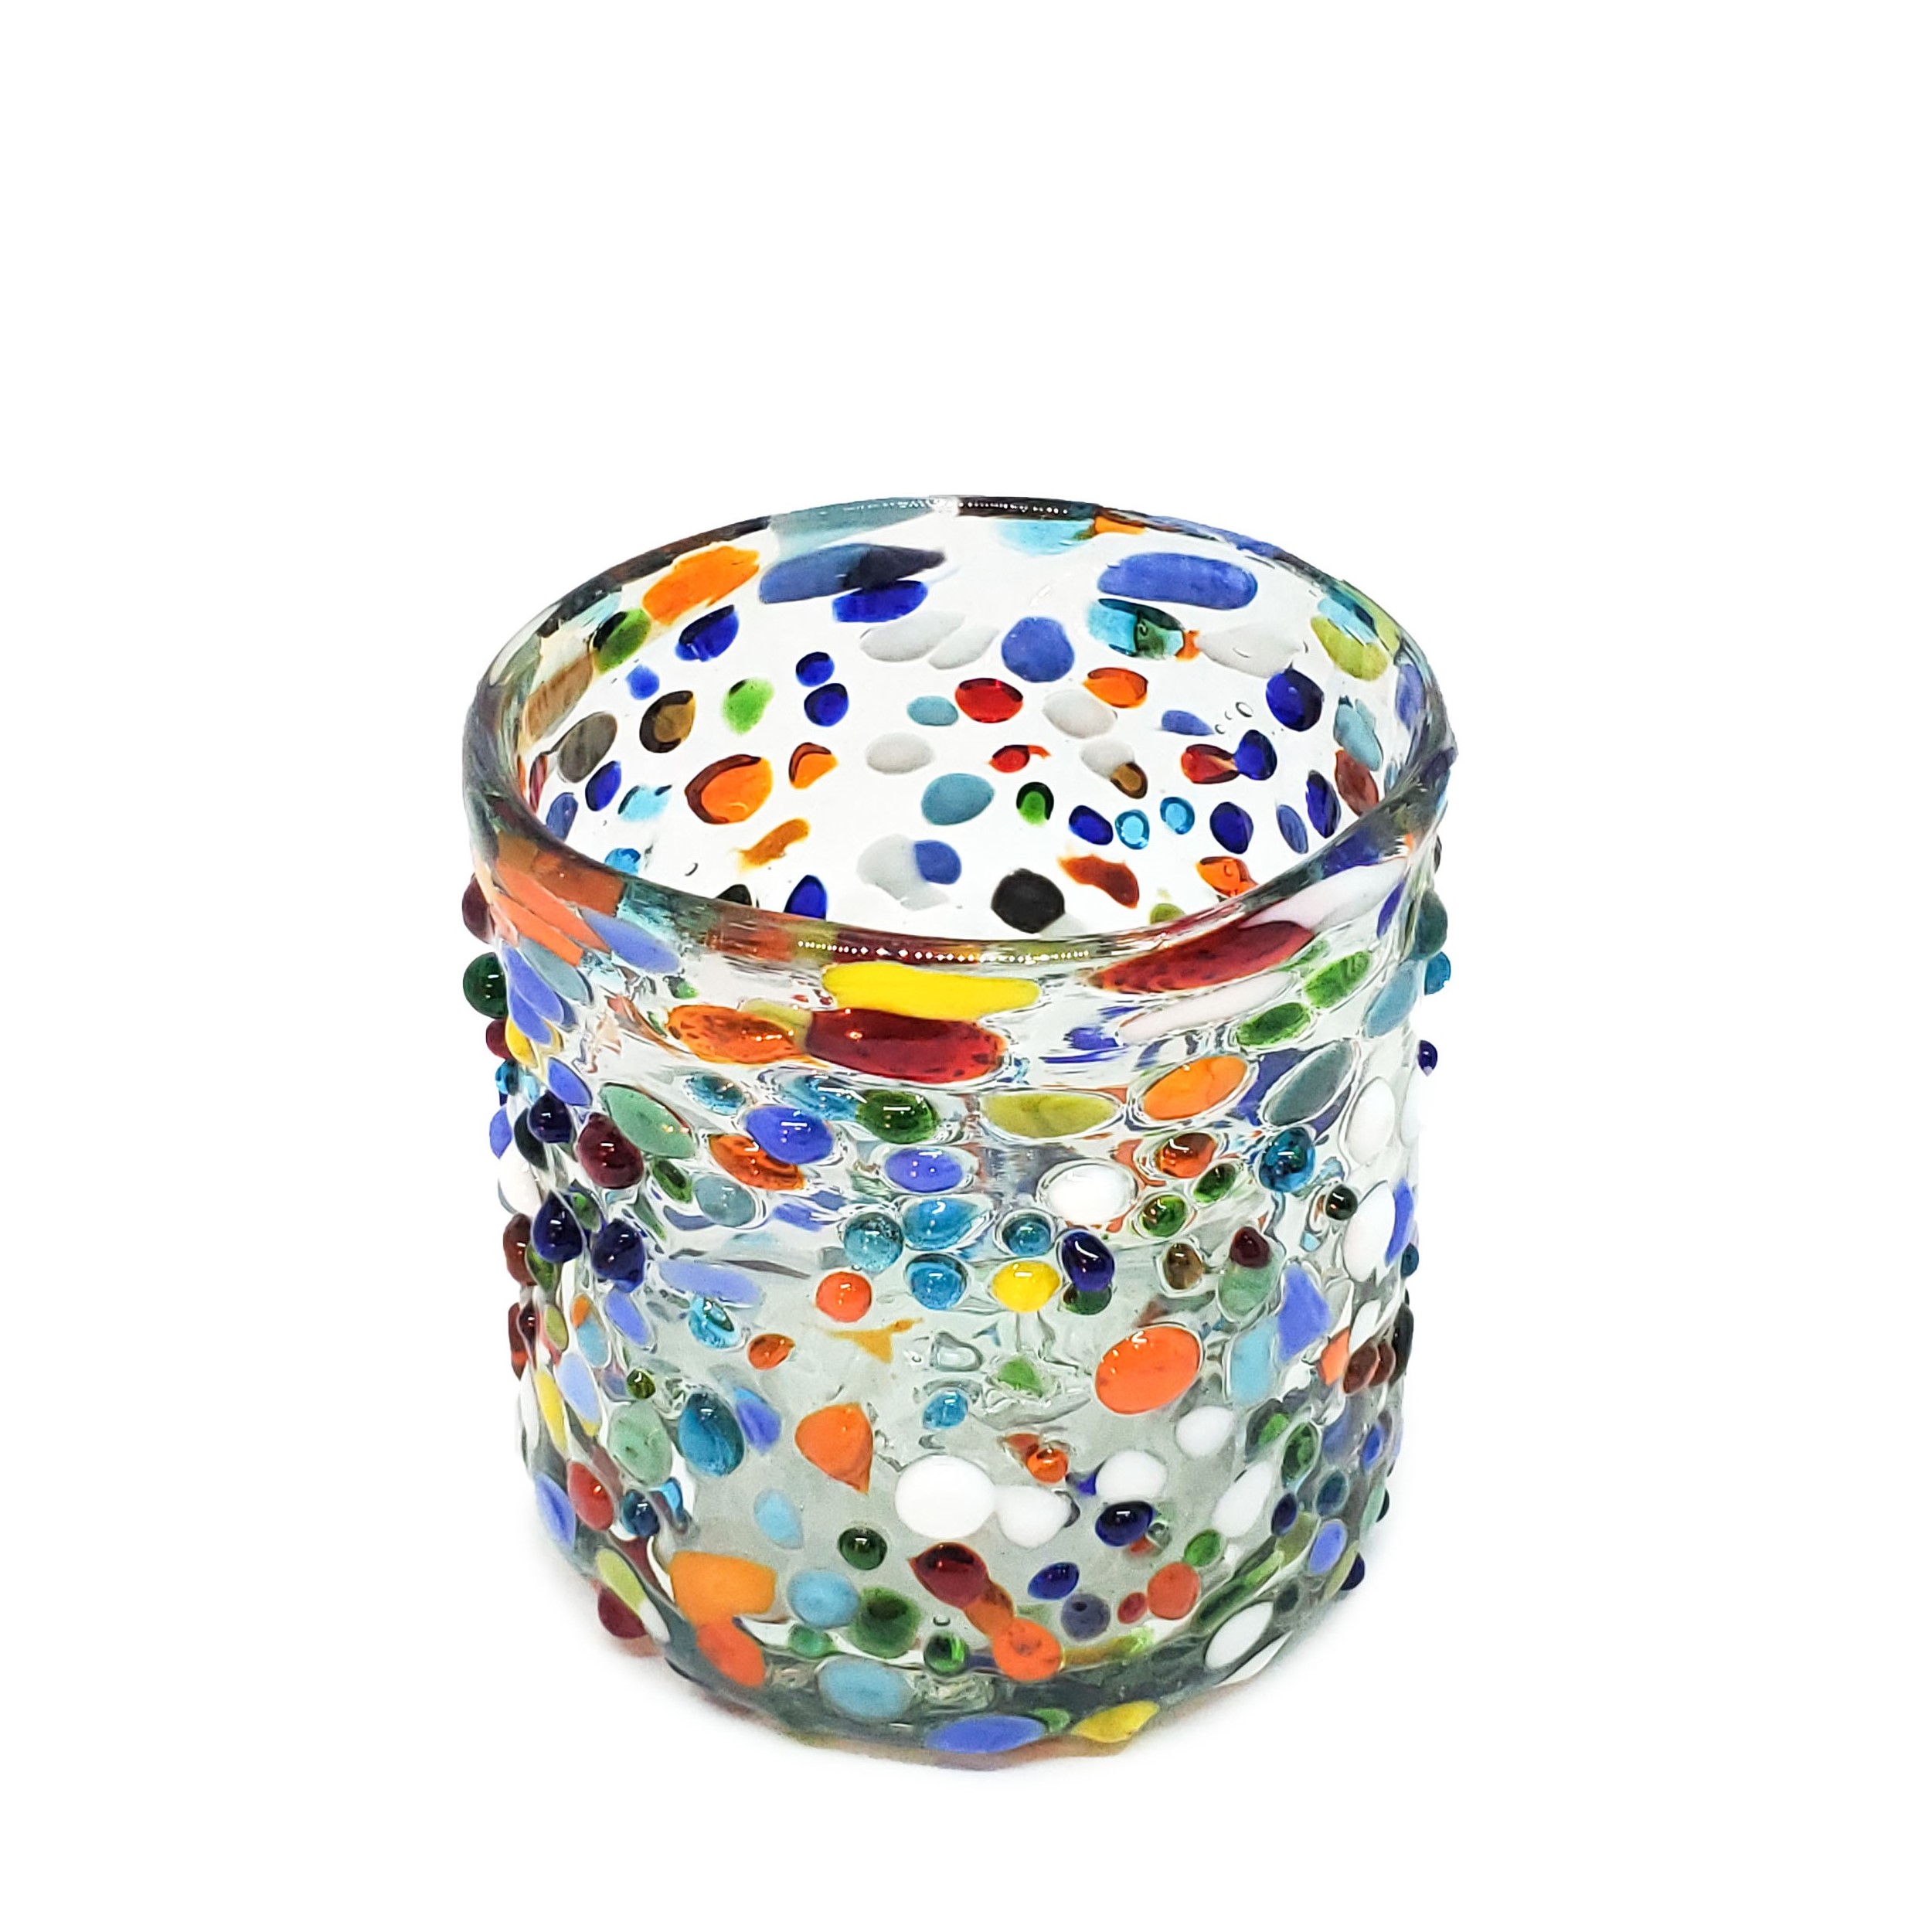 Ofertas / Juego de 6 vasos DOF 8oz Confeti granizado / Deje entrar a la primavera en su casa con éste colorido juego de vasos. El decorado con vidrio multicolor los hace resaltar en cualquier lugar.